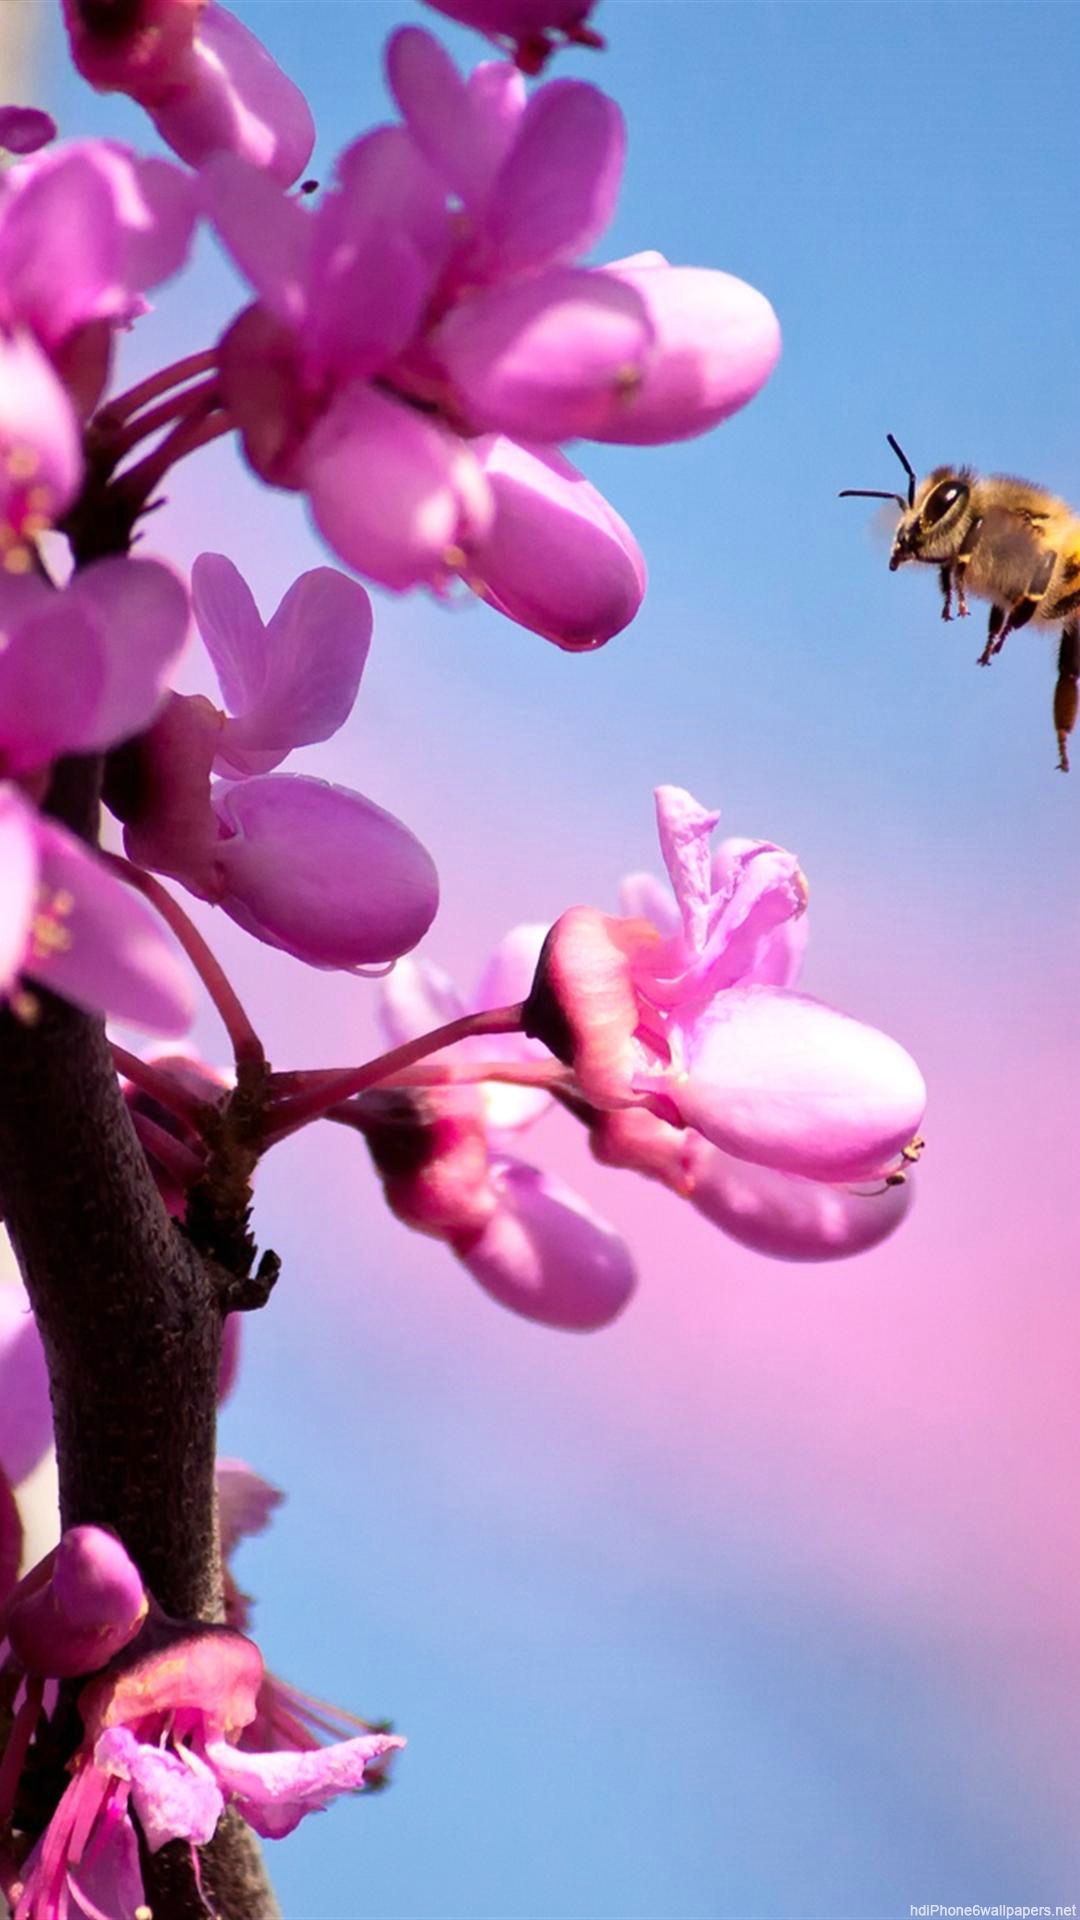 fondos de pantalla hd para iphone 6 1080p,rosado,flor,pétalo,primavera,planta